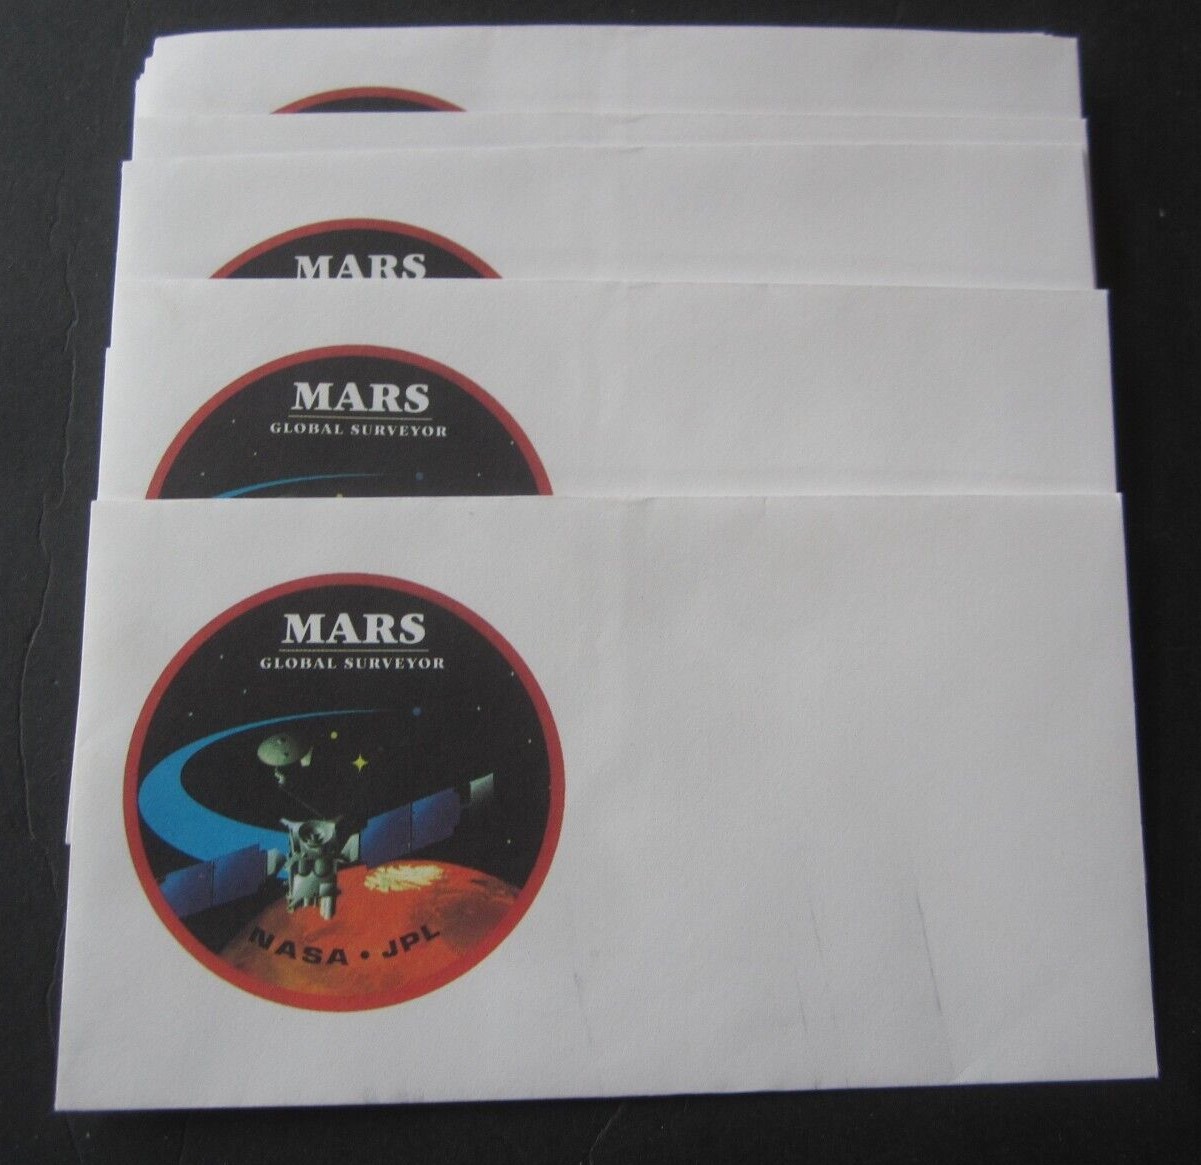 Lot of 10 Old Vintage - NASA - JPL - MARS Globa...